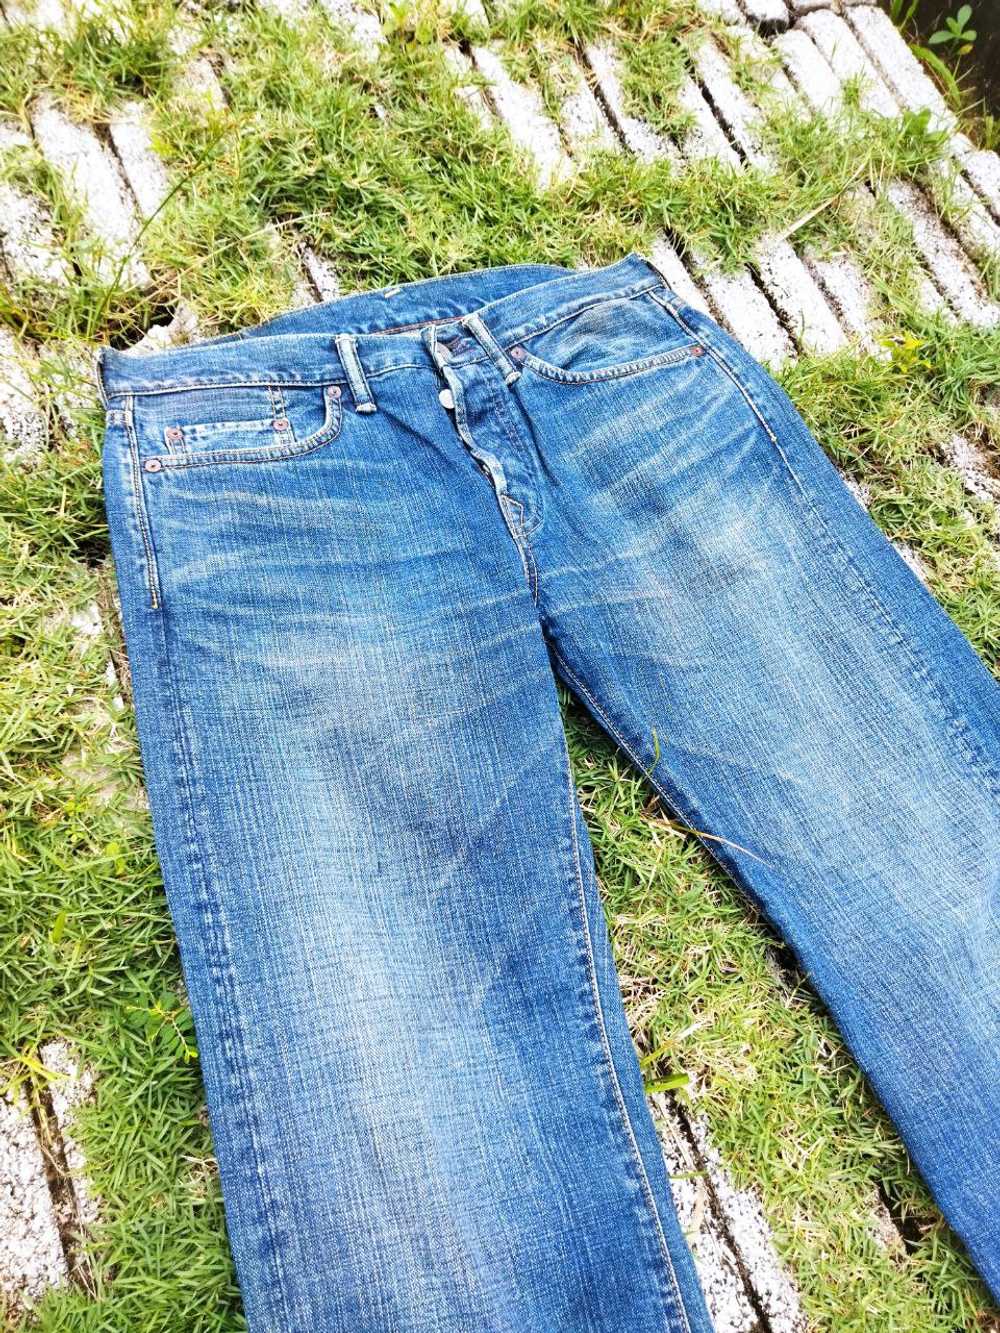 45rpm - Vintage 45rpm Japan Jeans - image 2